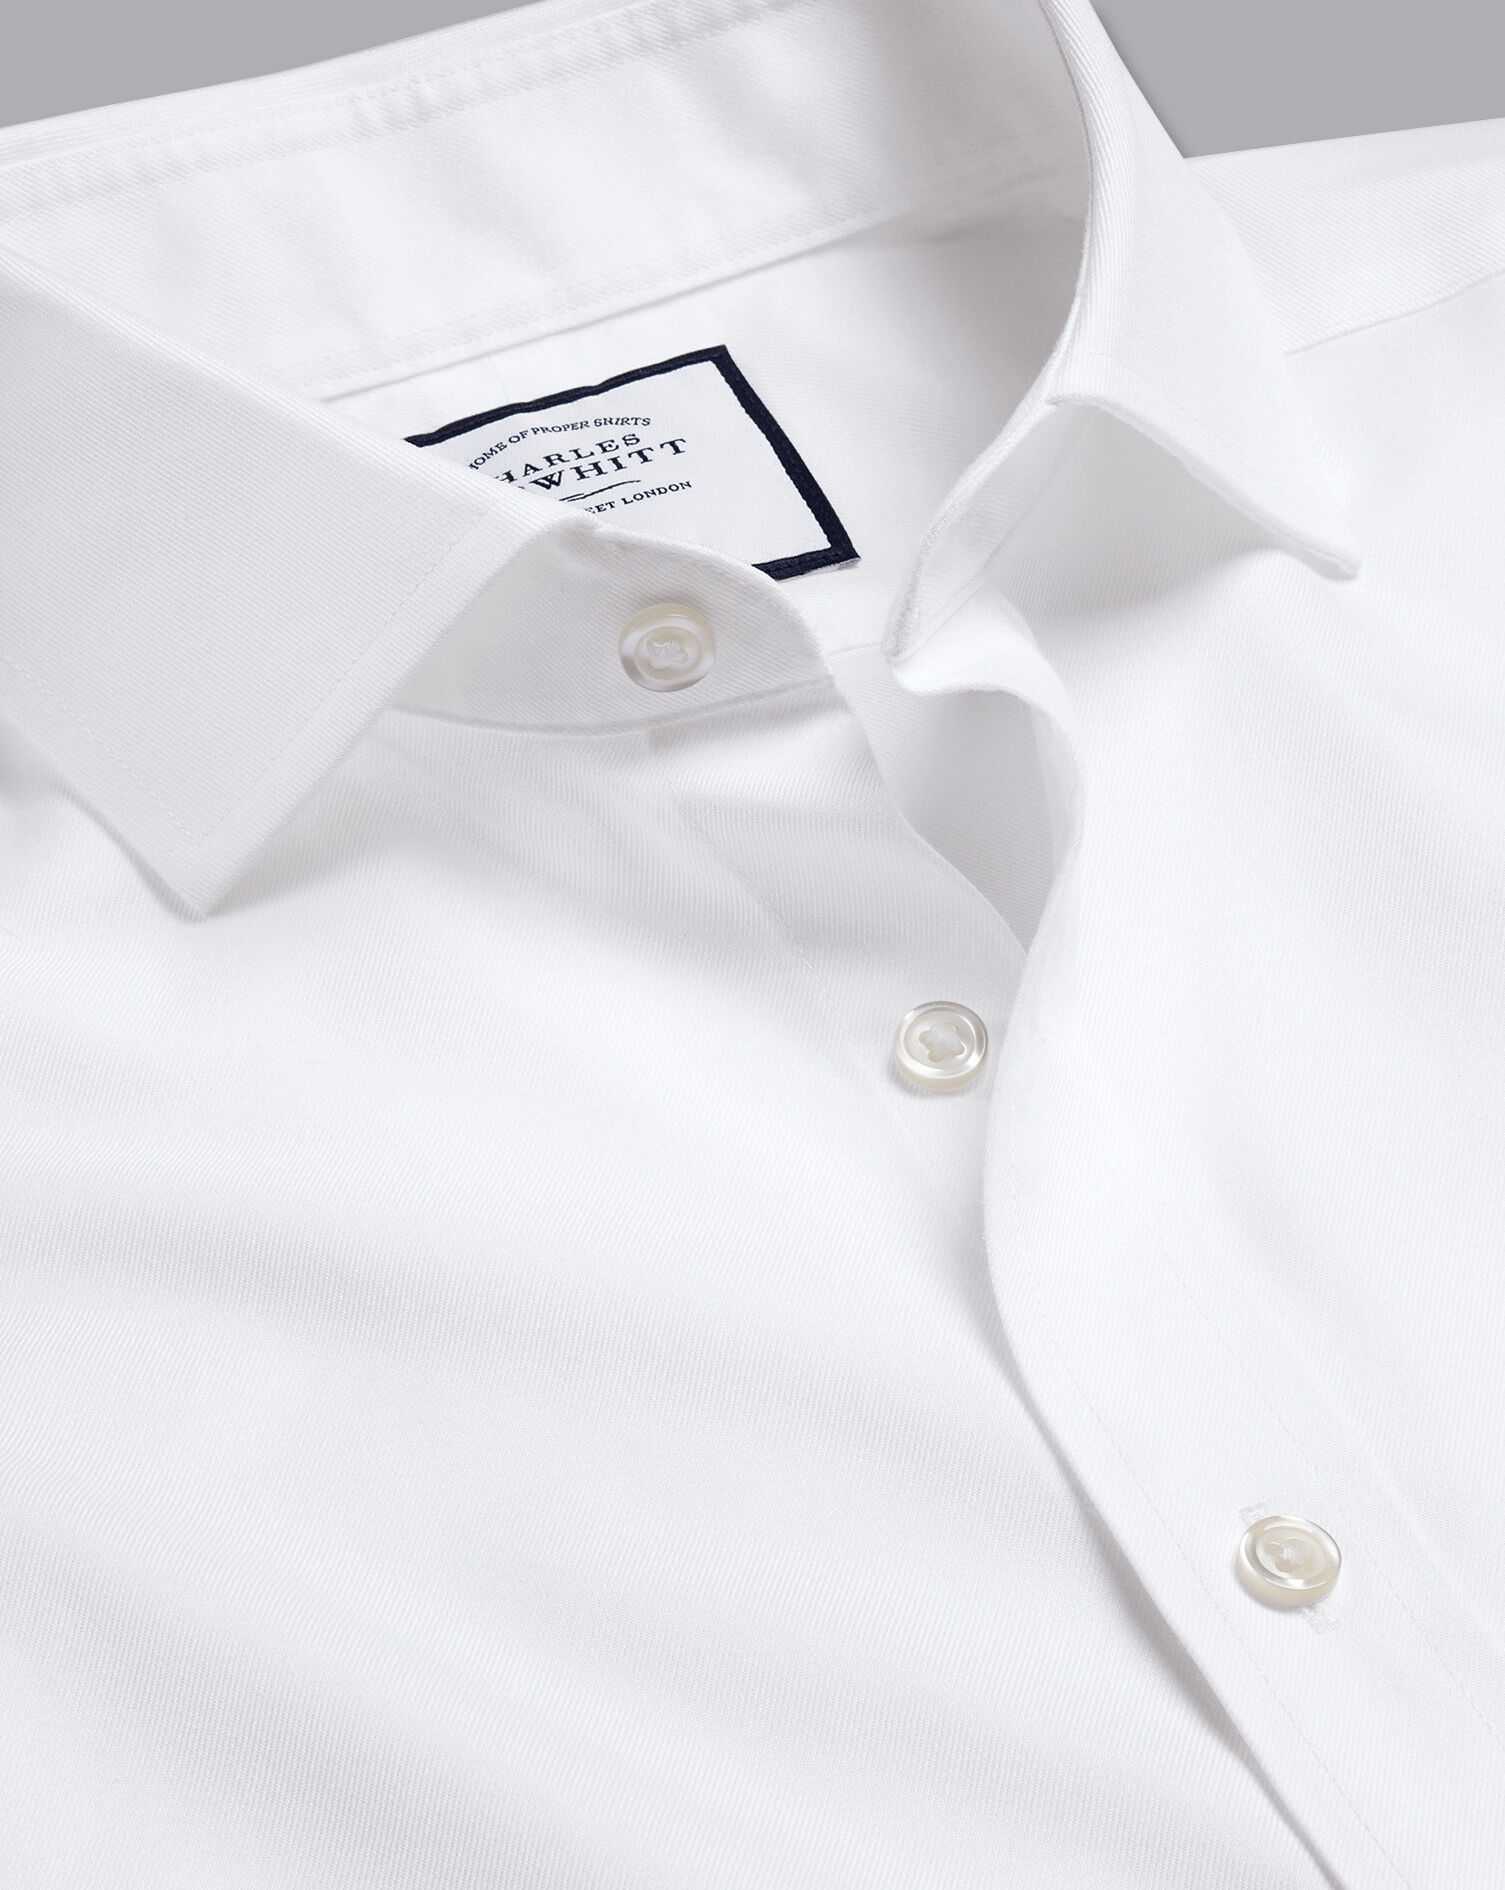 Charles Trywhitt Men's Luxury 16 1/2-33 Long Sleeve White Button Up Shirt Kleding Herenkleding Overhemden & T-shirts Overhemden 